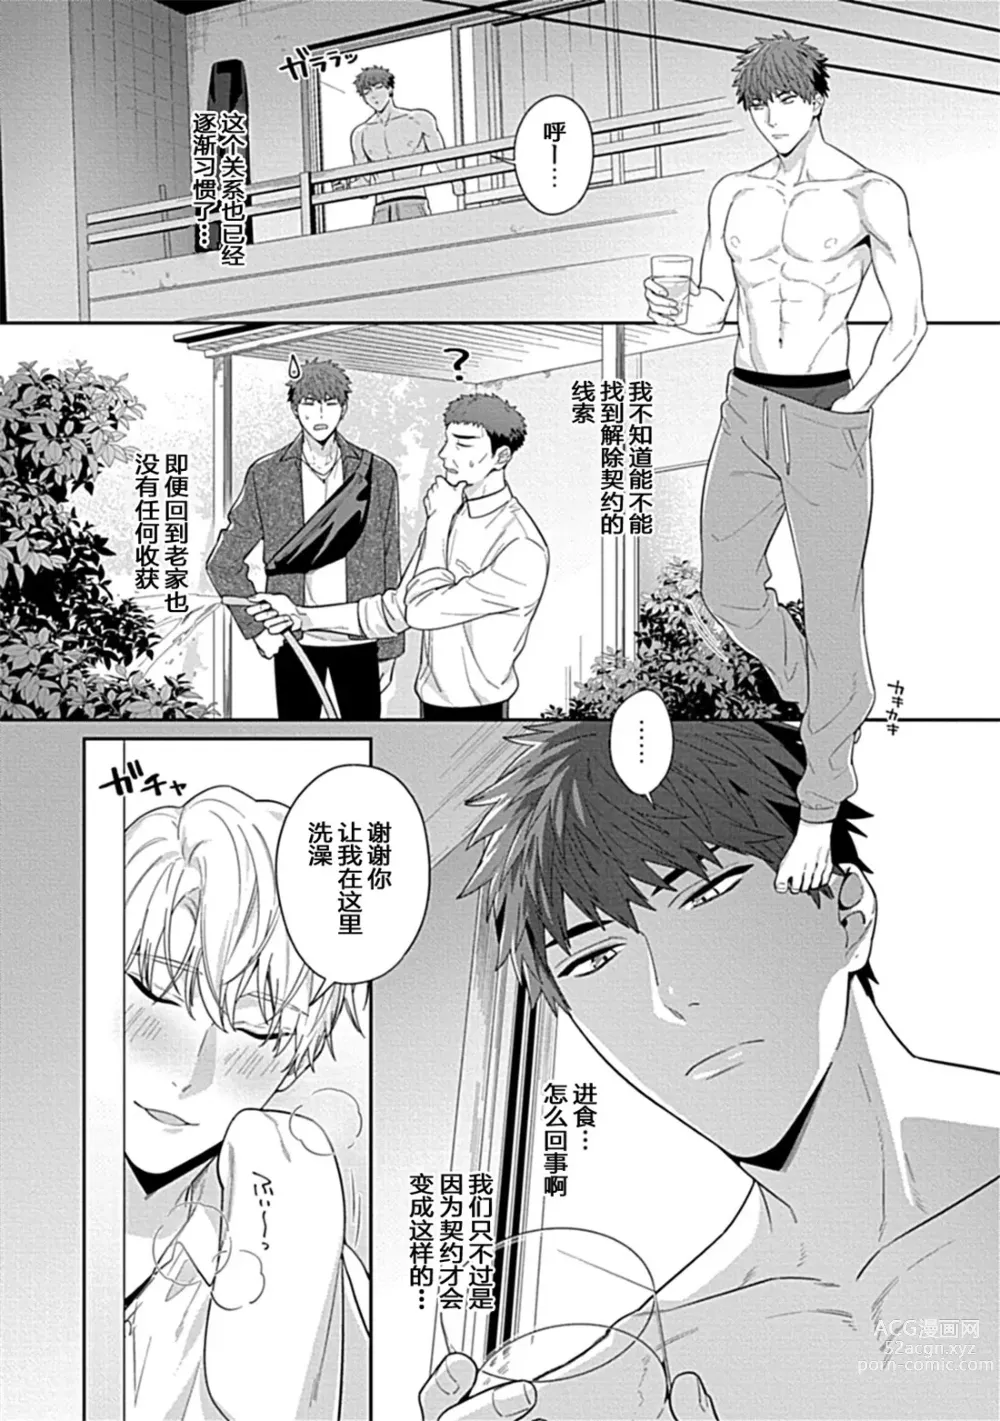 Page 4 of manga Sensei, Shokuji wa Bed no Ue de 3